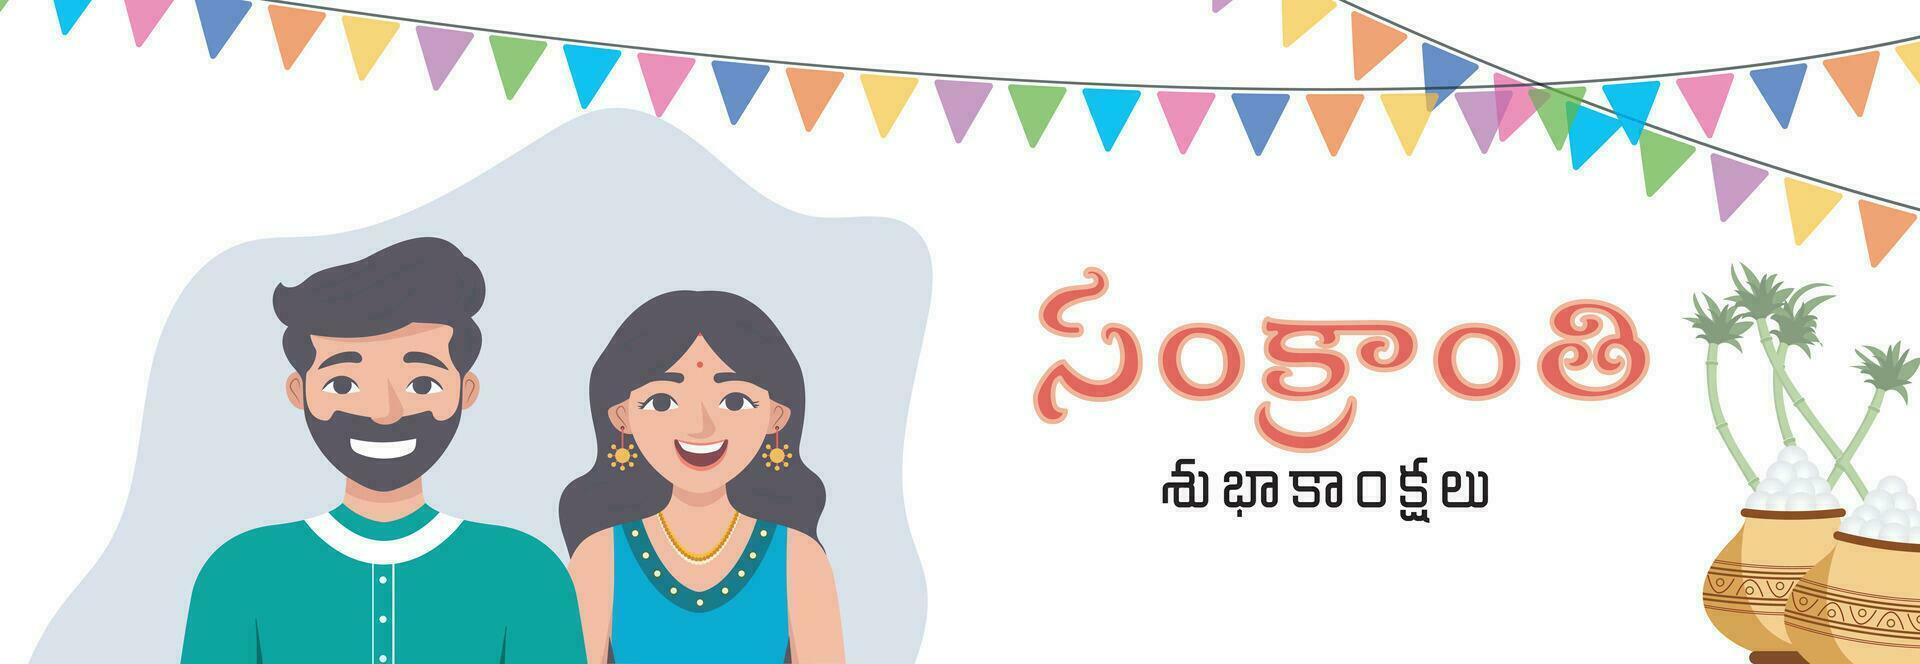 Süd indisch Makar Sankranti Festival Banner im telegu Text, glücklich pongal Feierlichkeiten Schöne Grüße mit pongal Elemente vektor